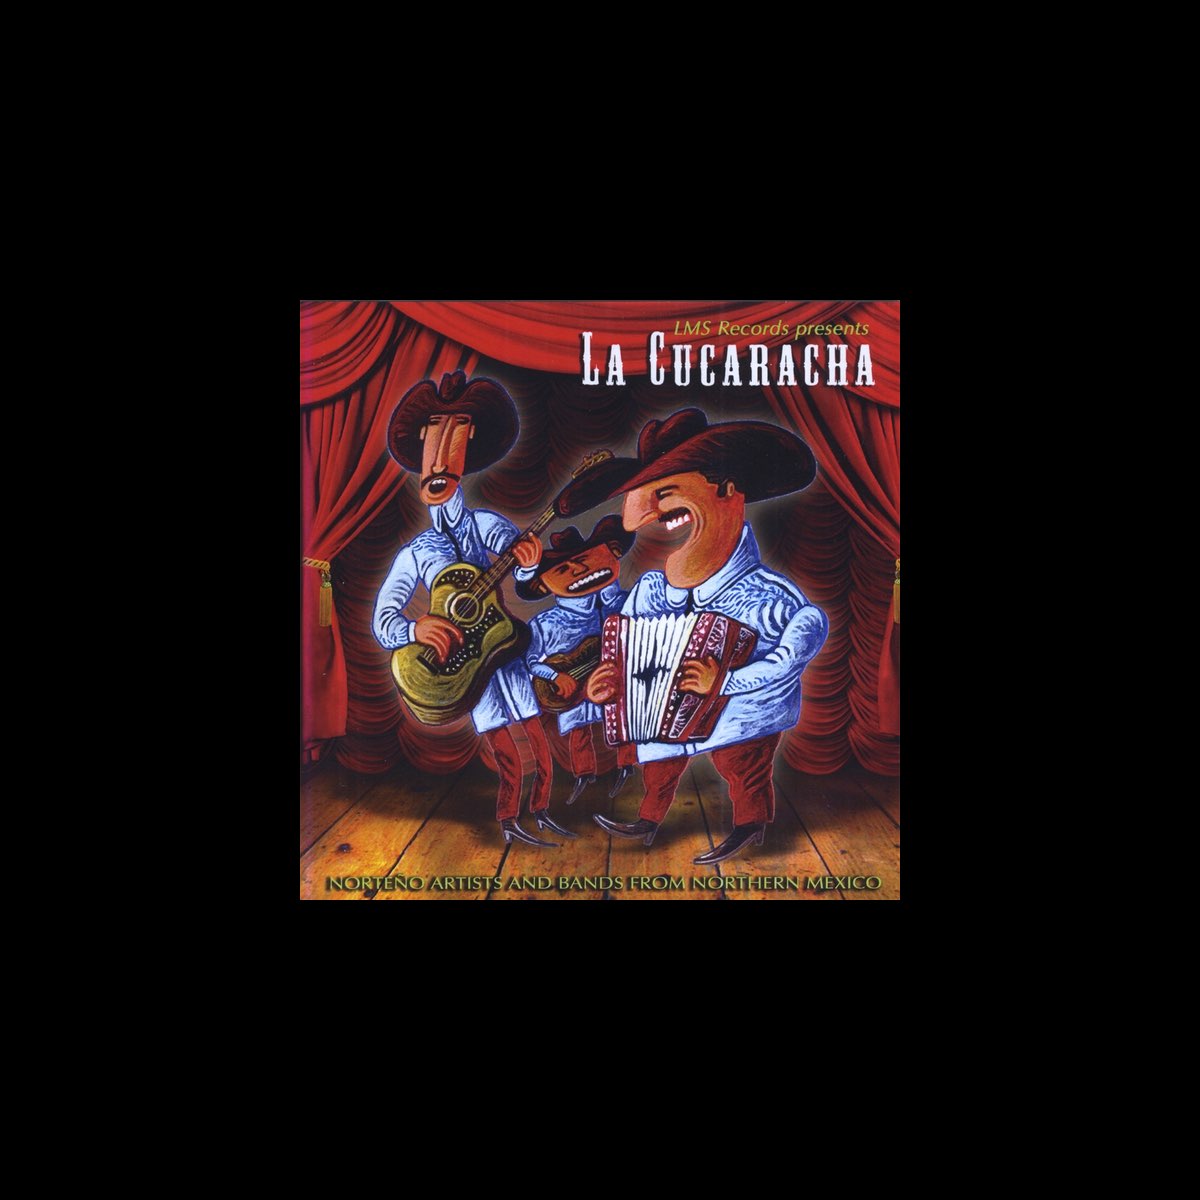 La Cucaracha - Album by Various Artists - Apple Music